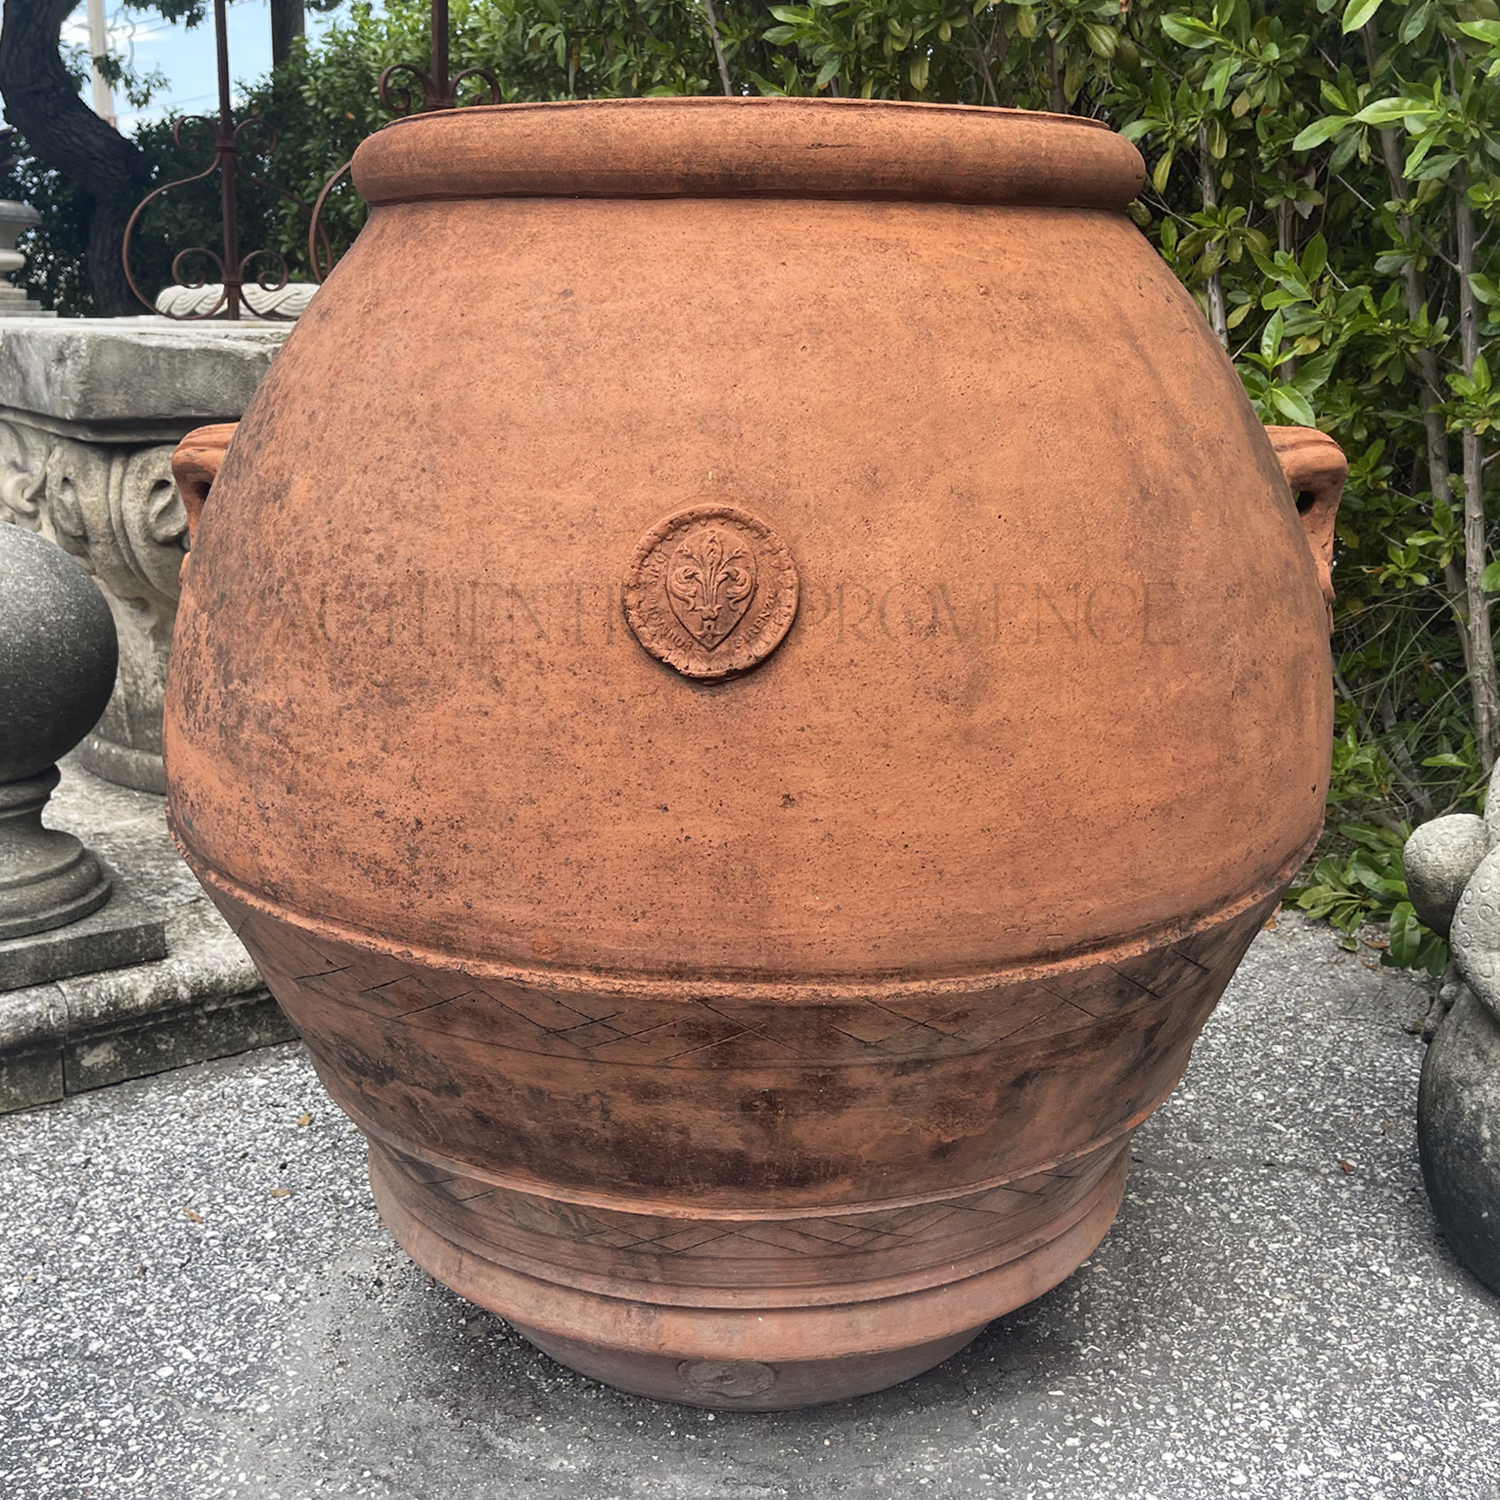 Montefioralle Tuscan Jar